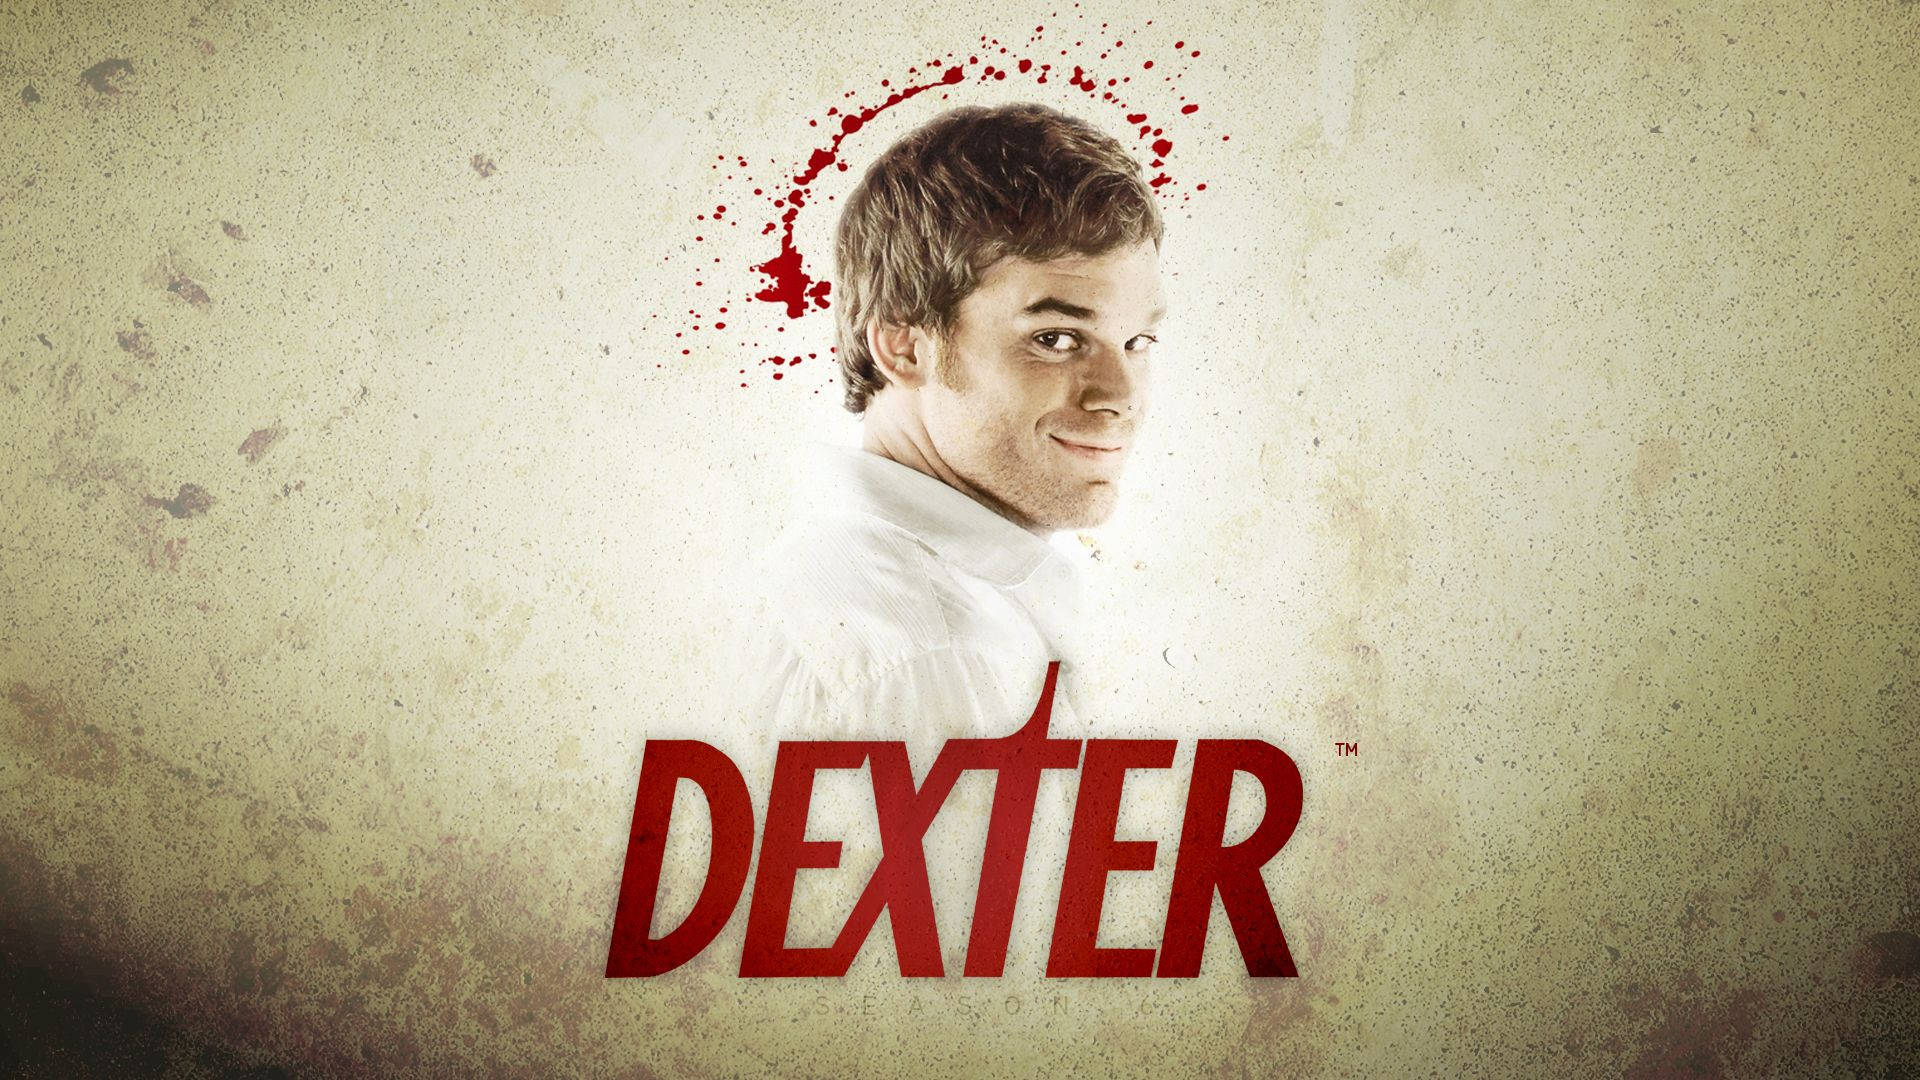 Outstanding Lead Actor Dexter Morgan Background